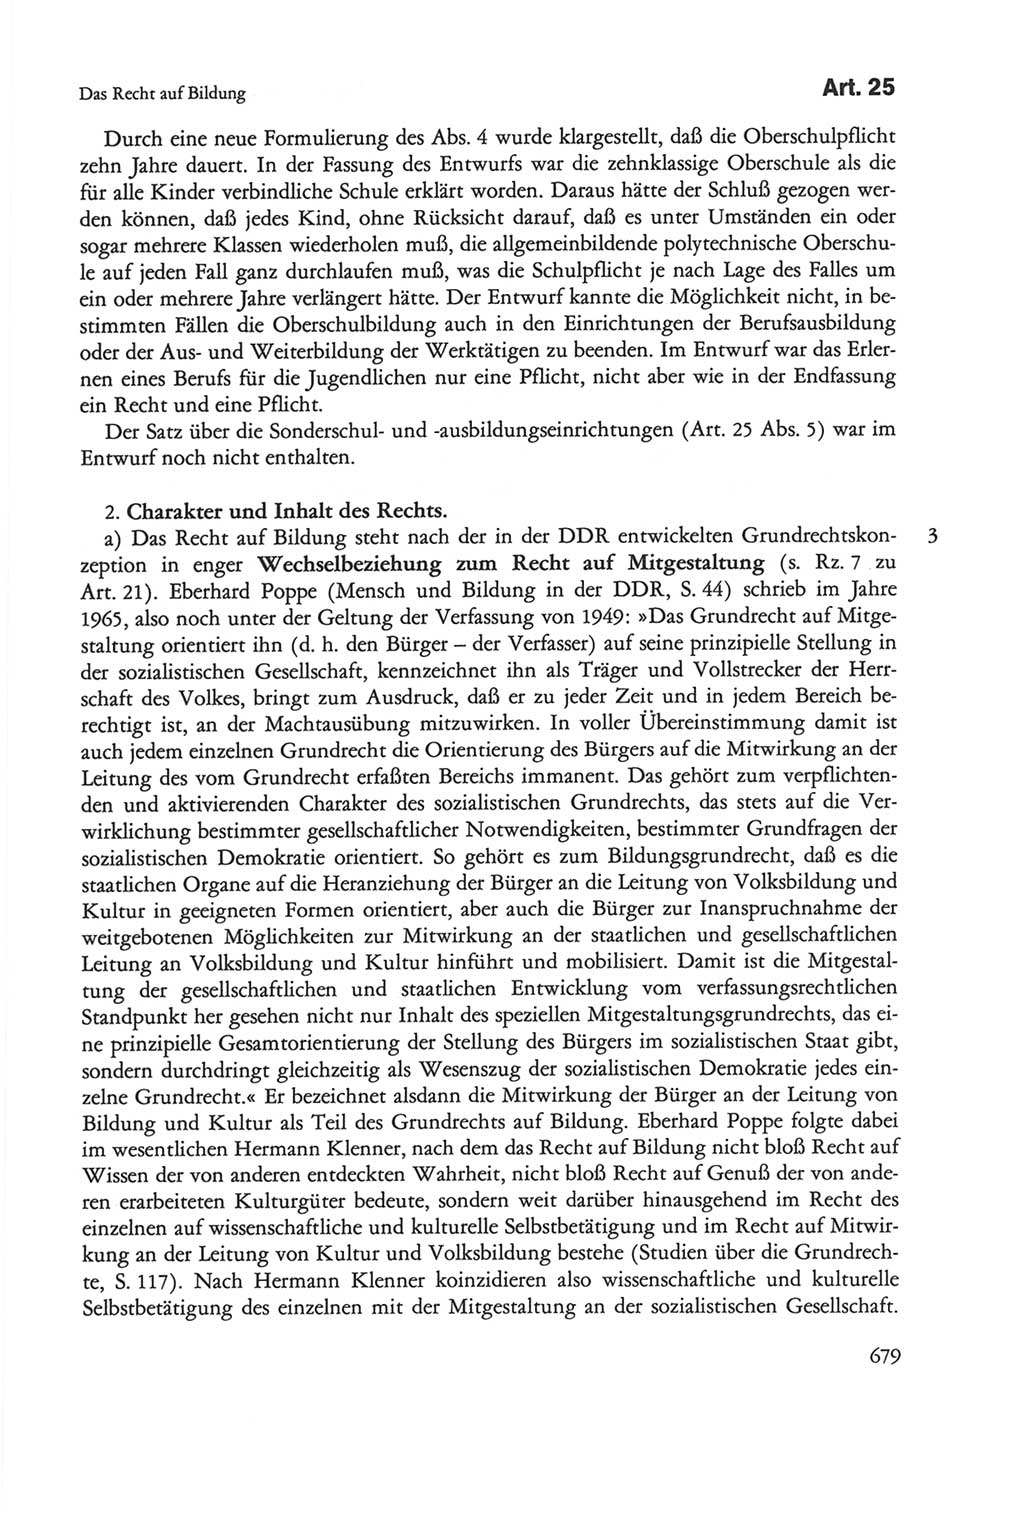 Die sozialistische Verfassung der Deutschen Demokratischen Republik (DDR), Kommentar 1982, Seite 679 (Soz. Verf. DDR Komm. 1982, S. 679)